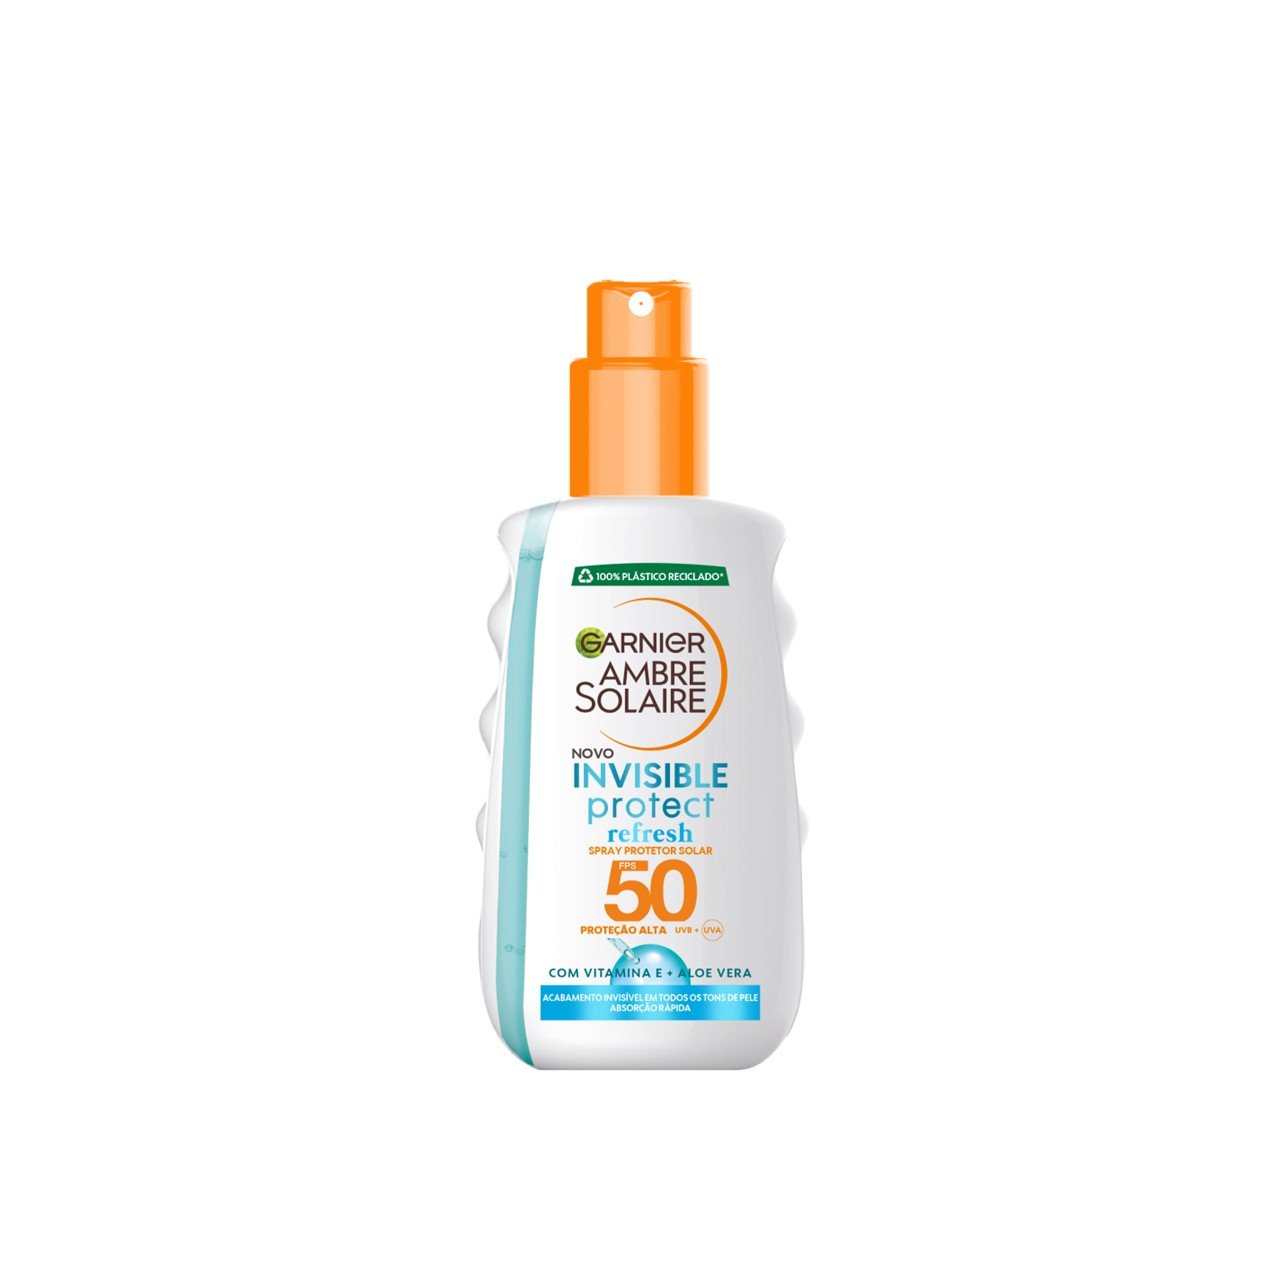 Garnier Ambre Solaire Invisible Protect Refresh Spray SPF50 200ml (6.76fl oz)